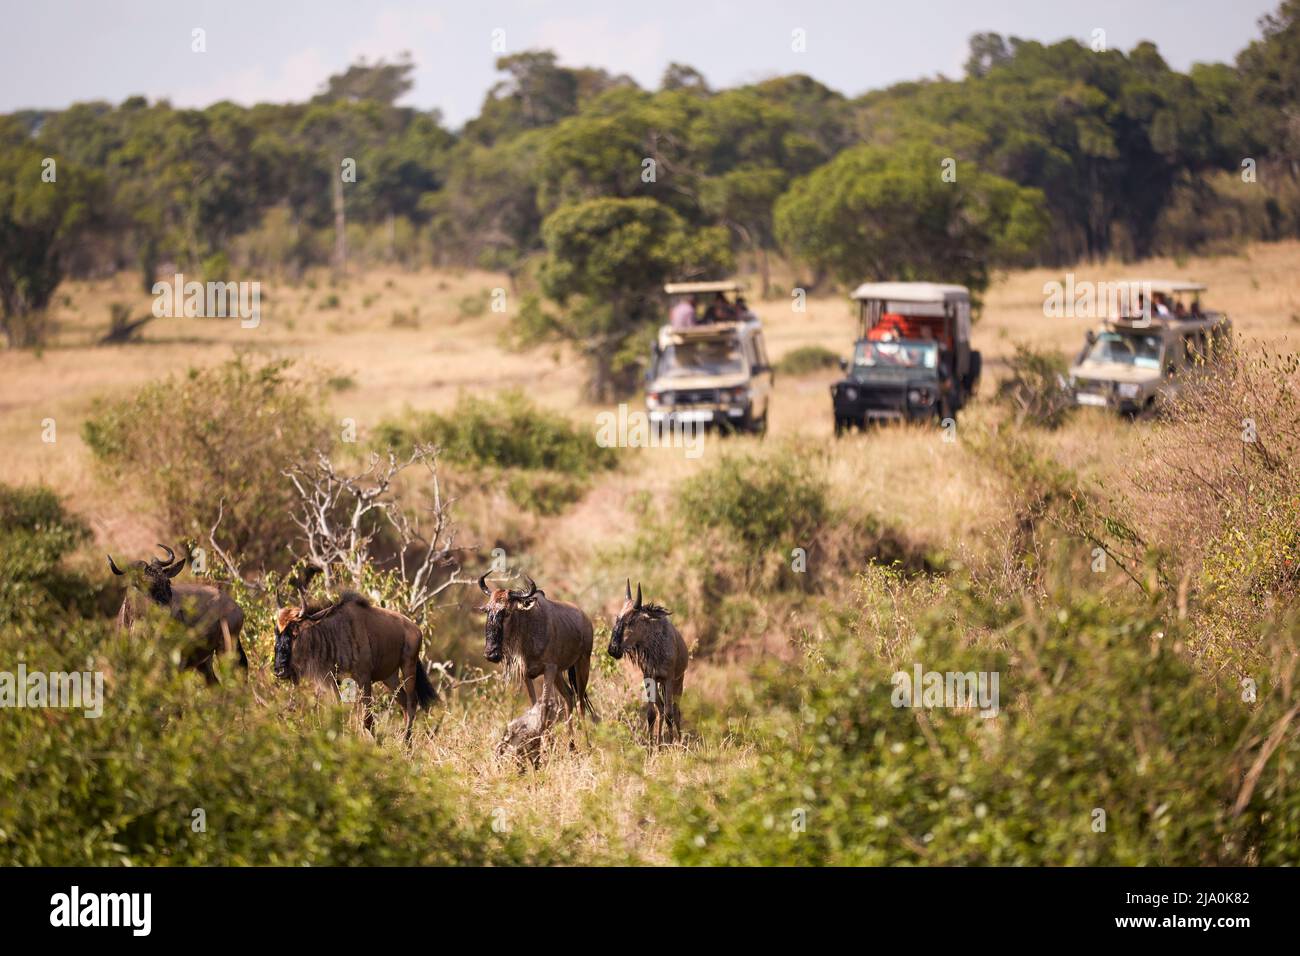 Geländewagen im Geländewagen nach der Gnus-Wanderung, Serengeti-Nationalpark, Tansania, Afrika. Stockfoto